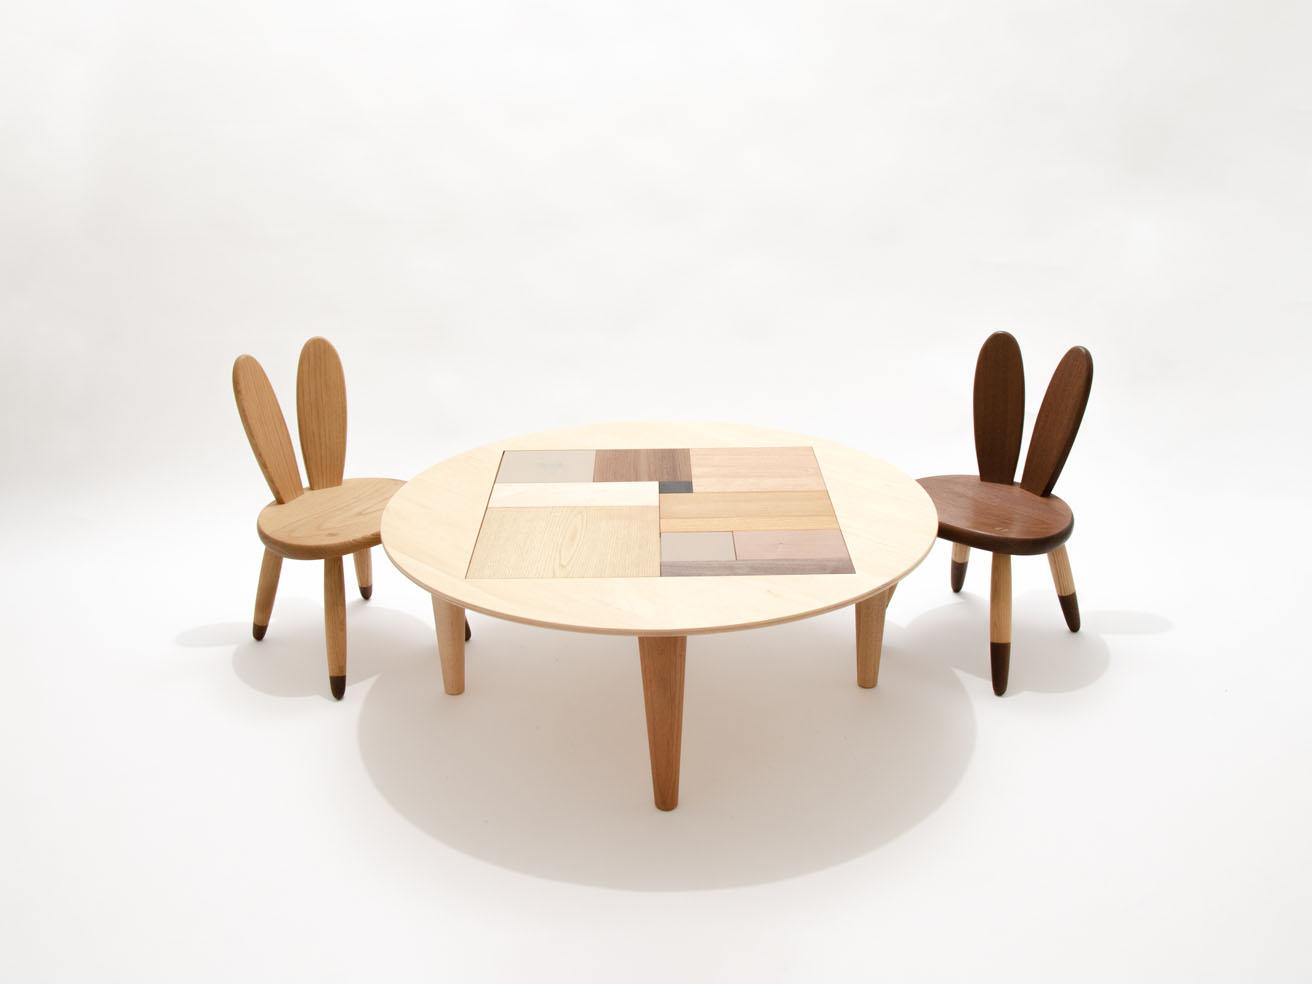 うさぎ椅子《LAPIN》とローテーブル《PUZZLE TABLE》。